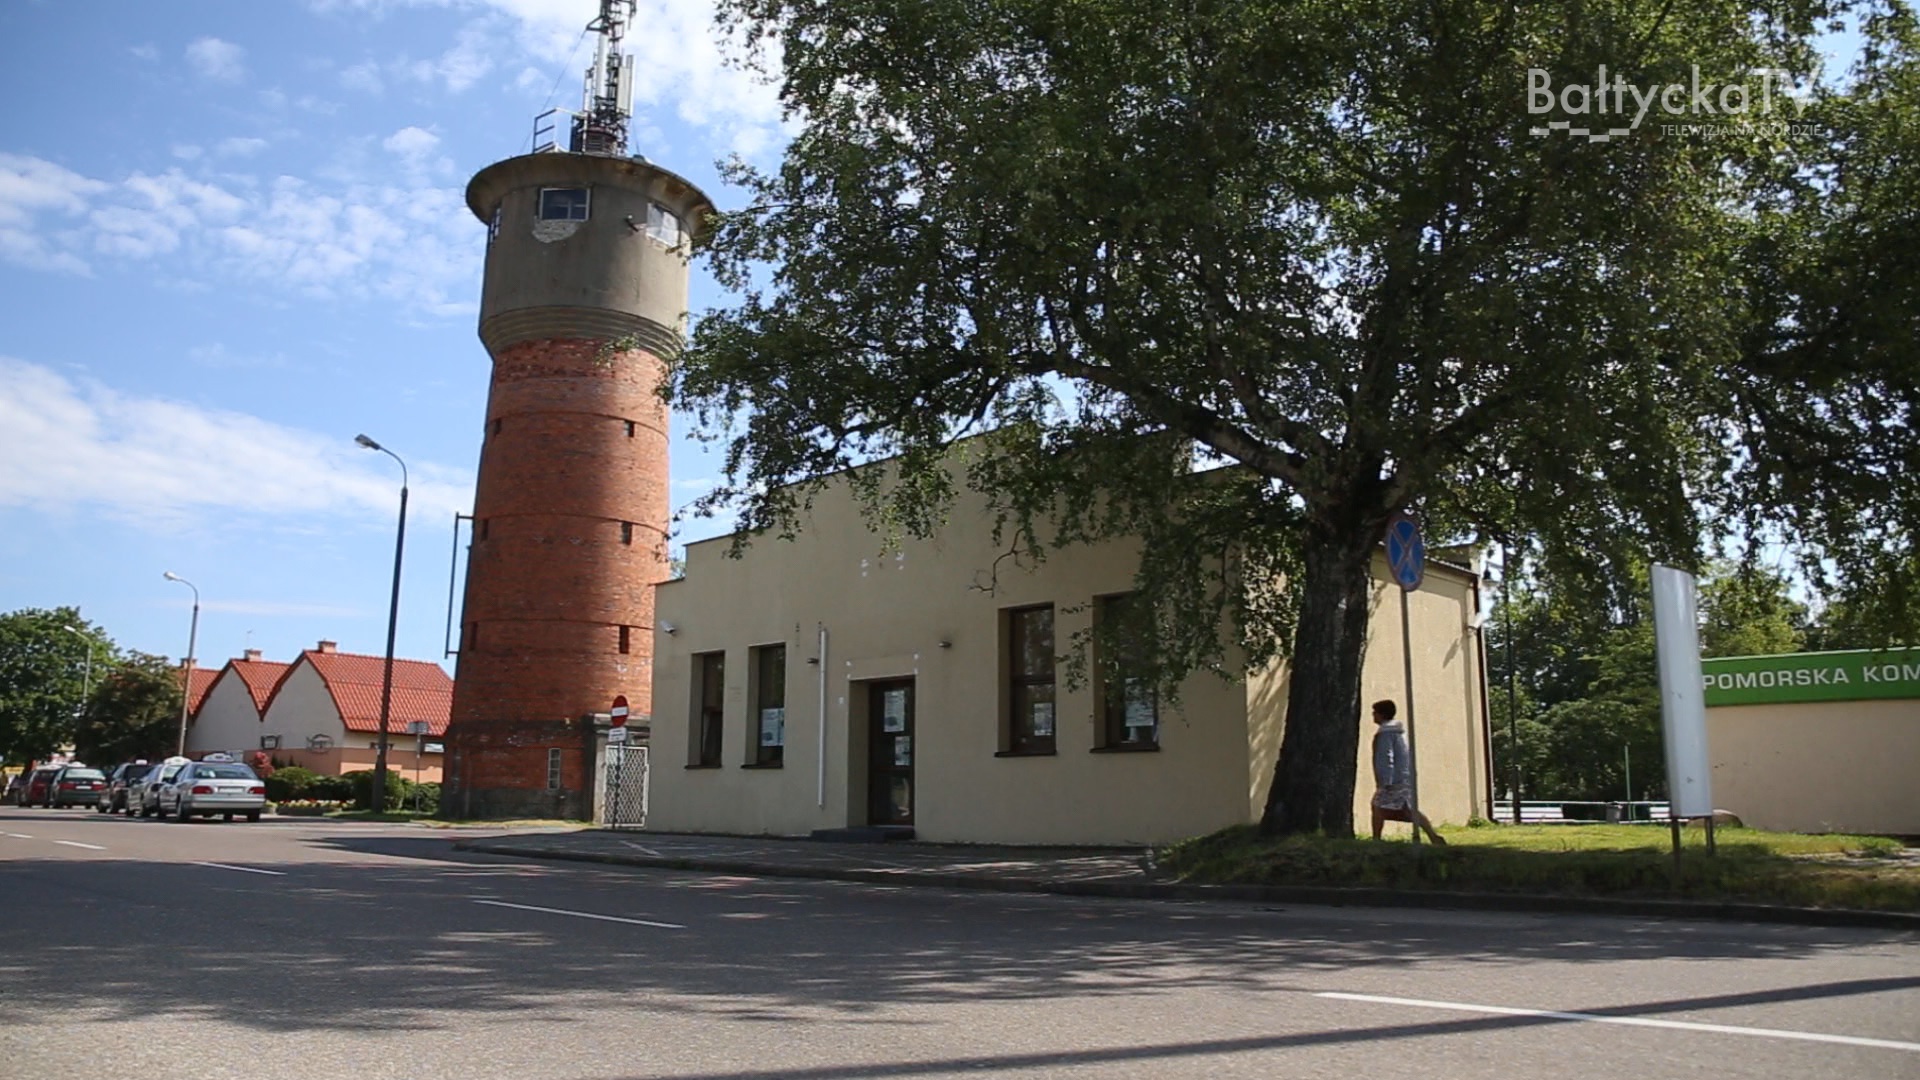 Centrum Kultury, Promocji i Sportu we Władysławowie po starem, ale w nowym miejscu